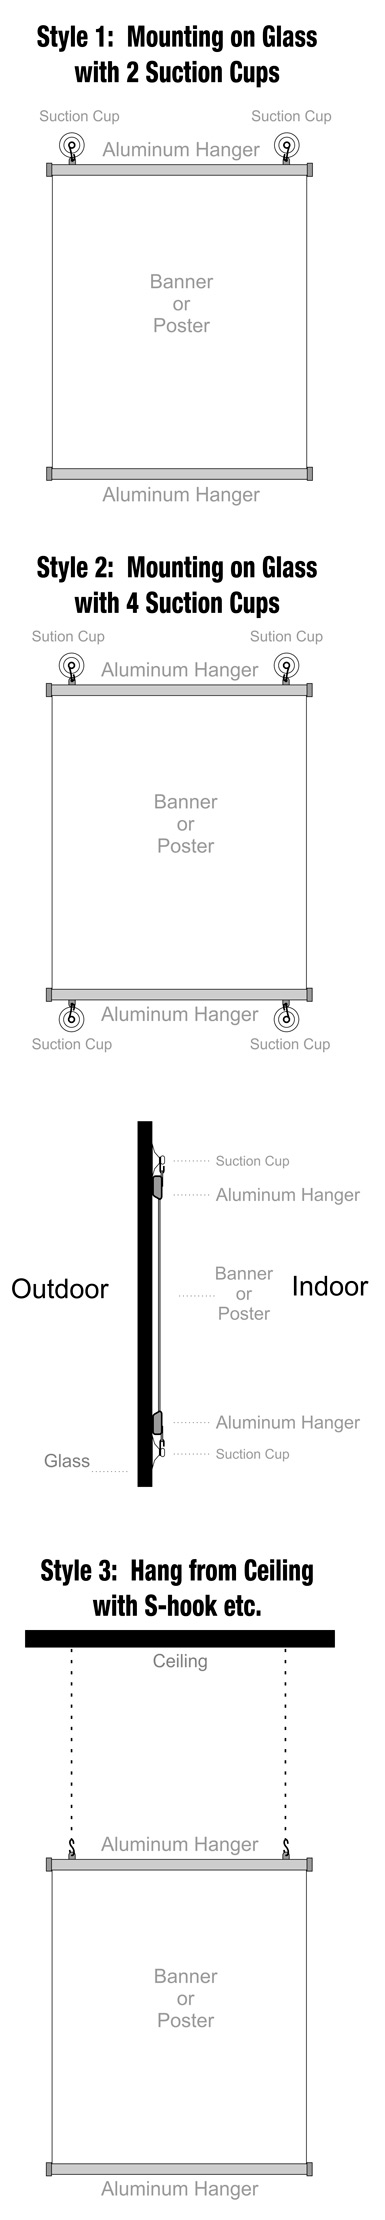 How to Hang Aluminum Hanger